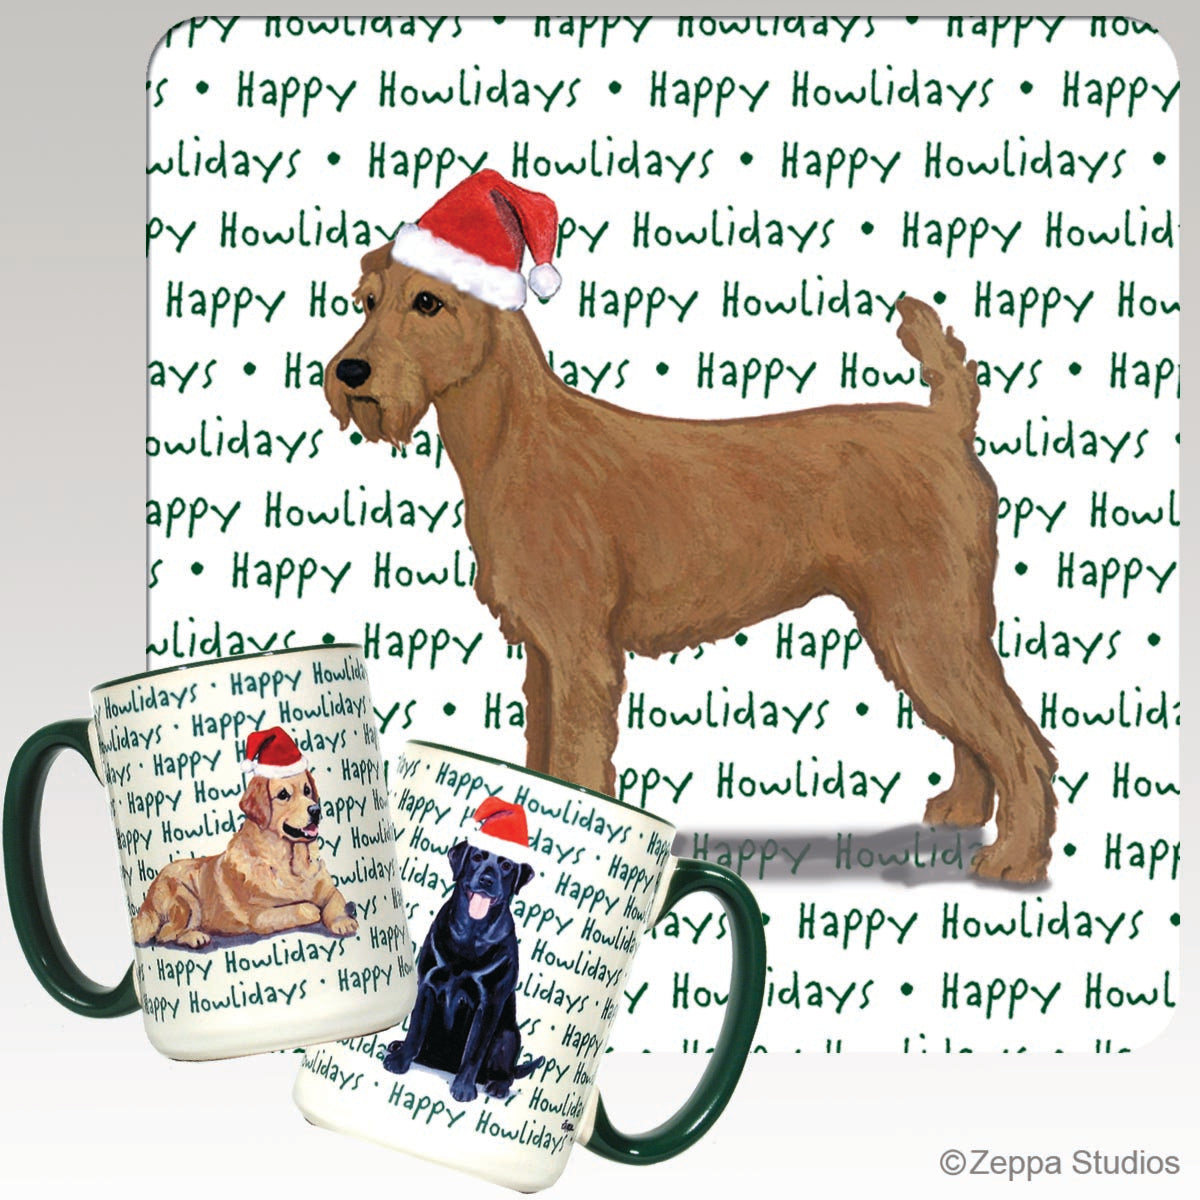 Irish Terrier Christmas Mugs